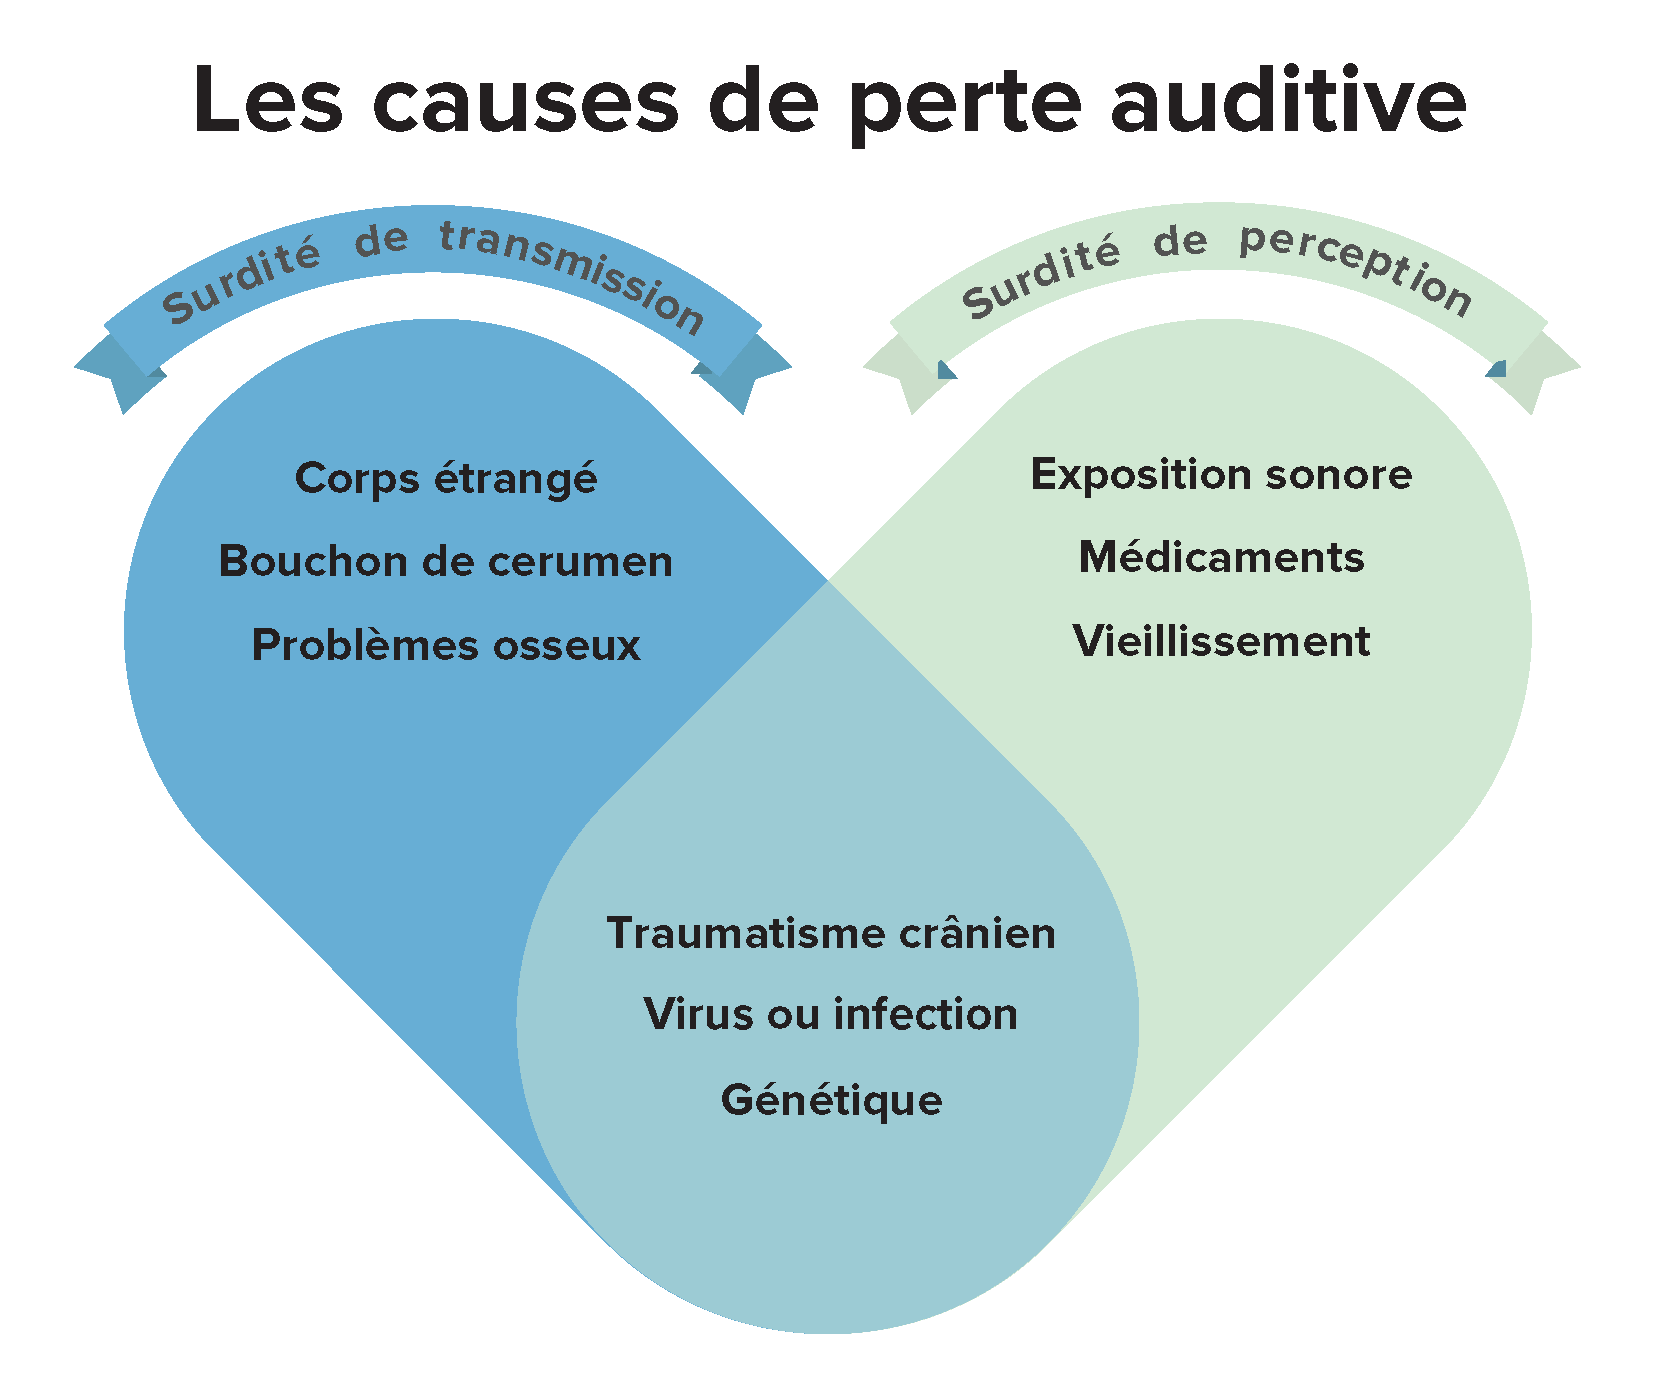 l’image montre un cœur divisé en différentes causes de perte auditive